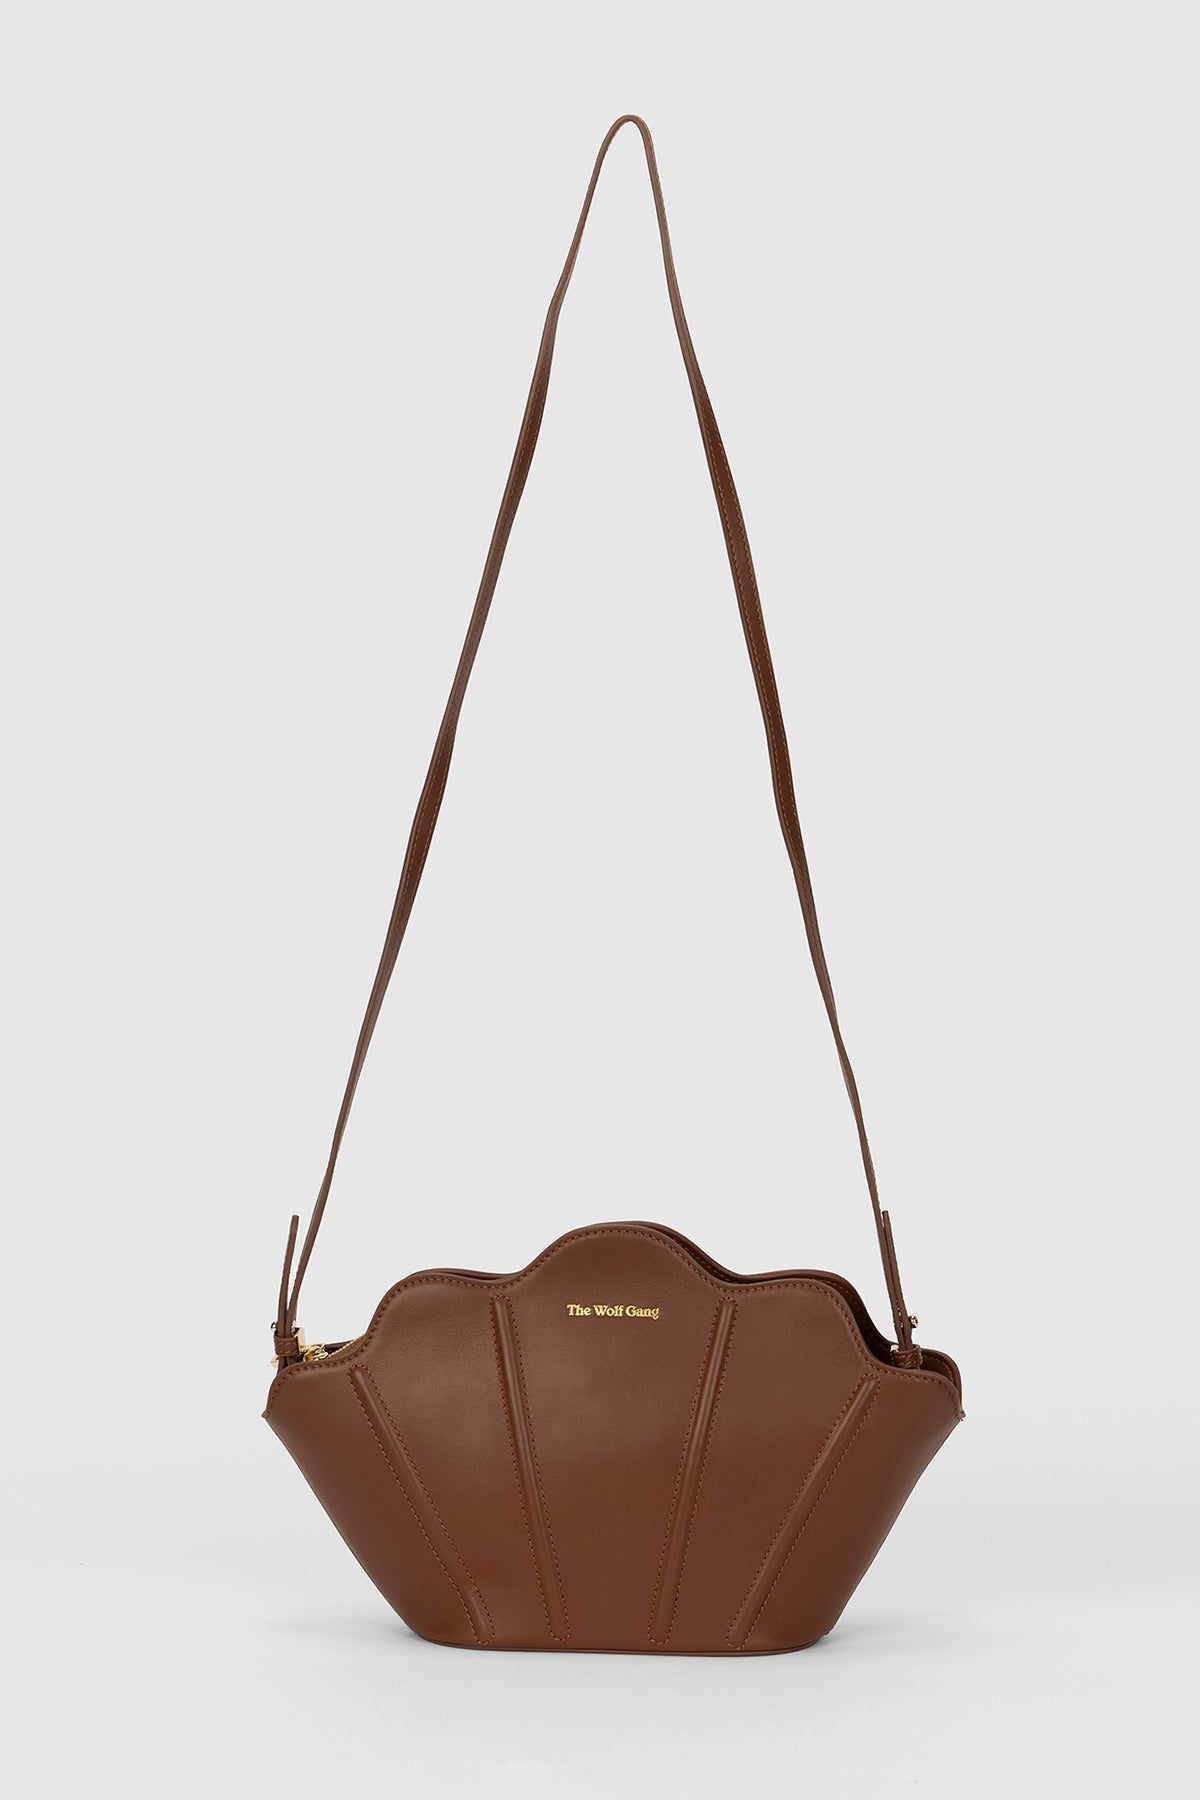 Wolf Bag/shoulder bag/back pack, leisure/sports bag, drawstring, 19 x 15  inches | eBay